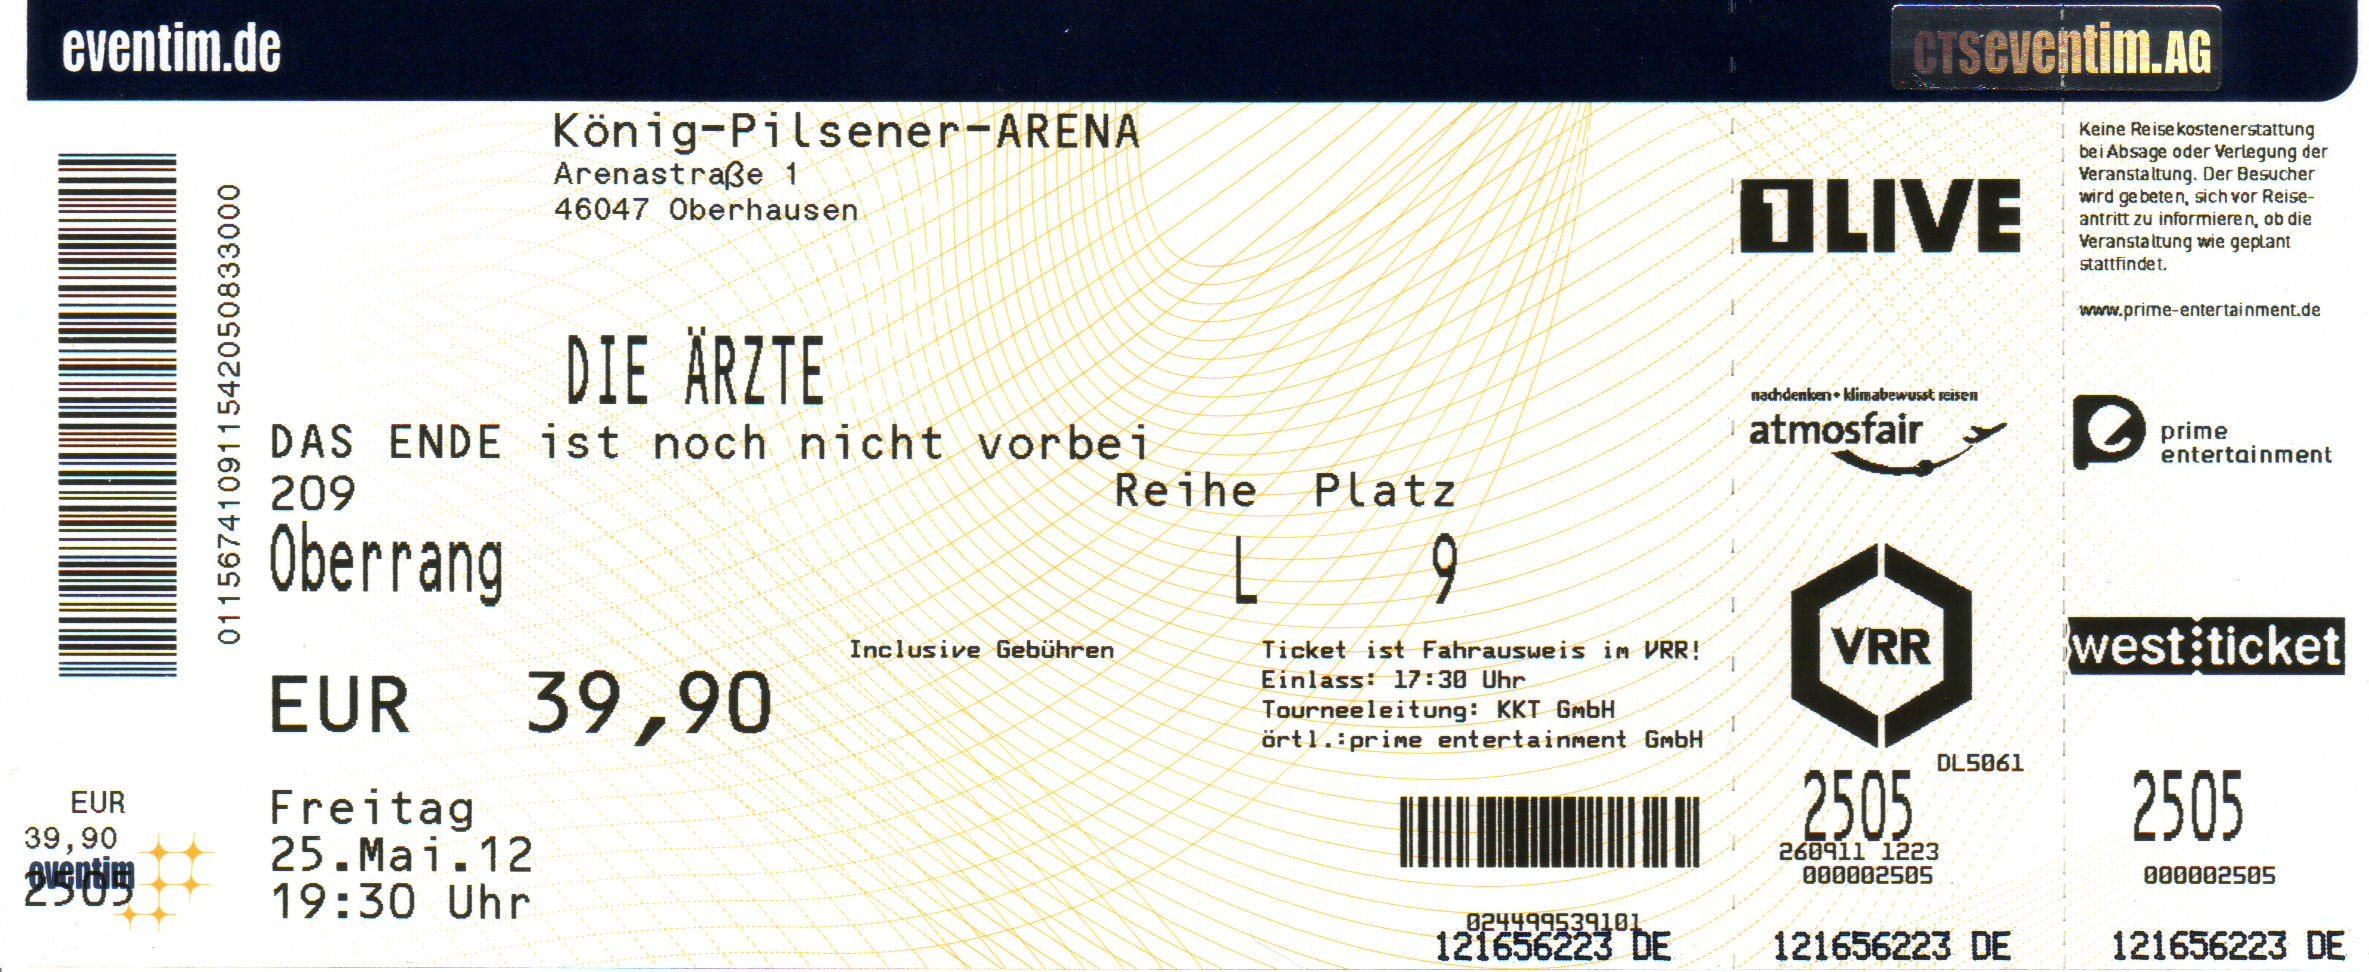 25.05.2012 – die ärzte – Das Ende ist noch nicht vorbei @Oberhausen/König-Pilsener-Arena